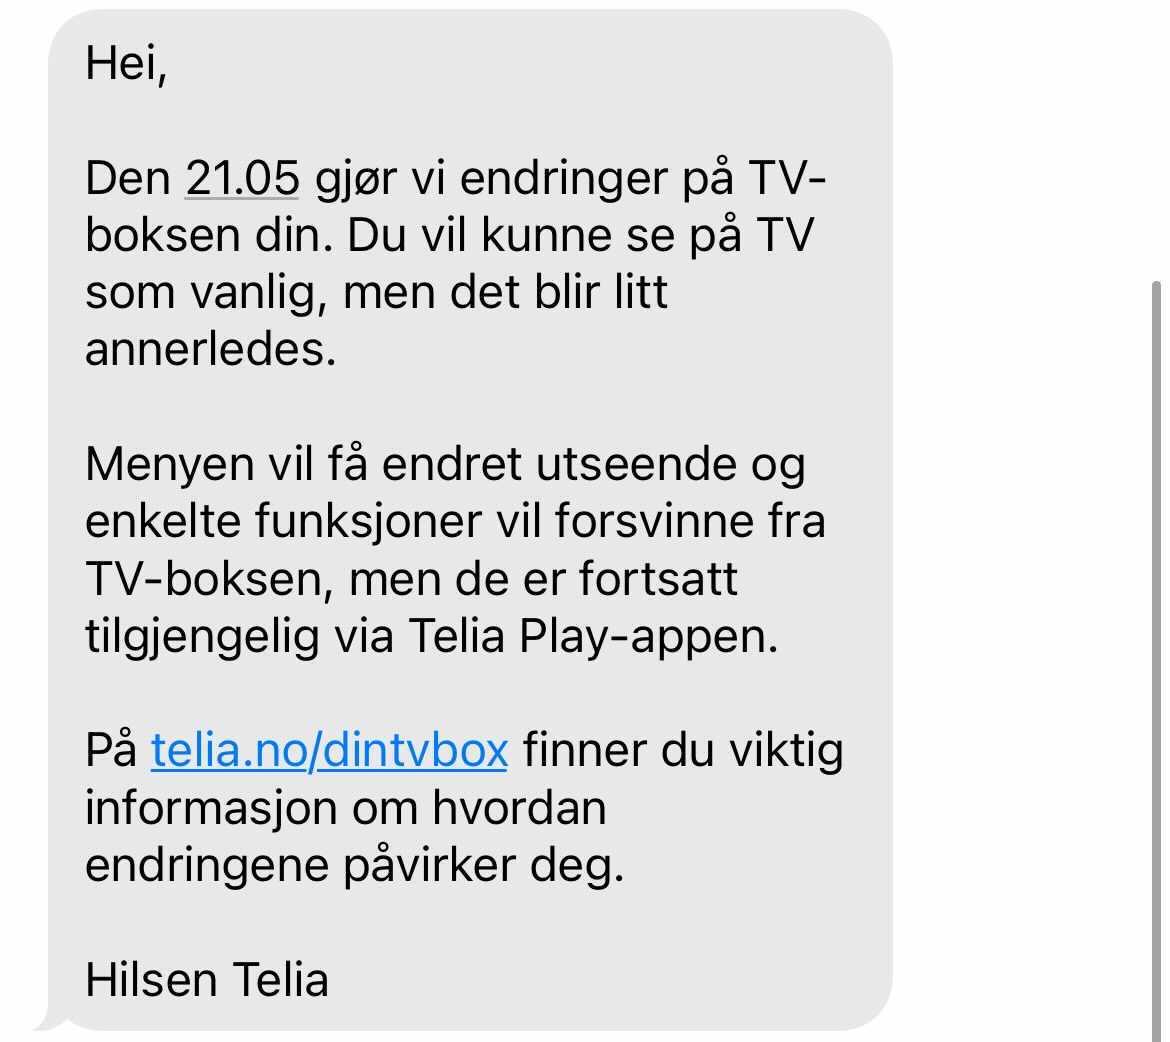 SMS-en Telia sendte kunder onsdag.